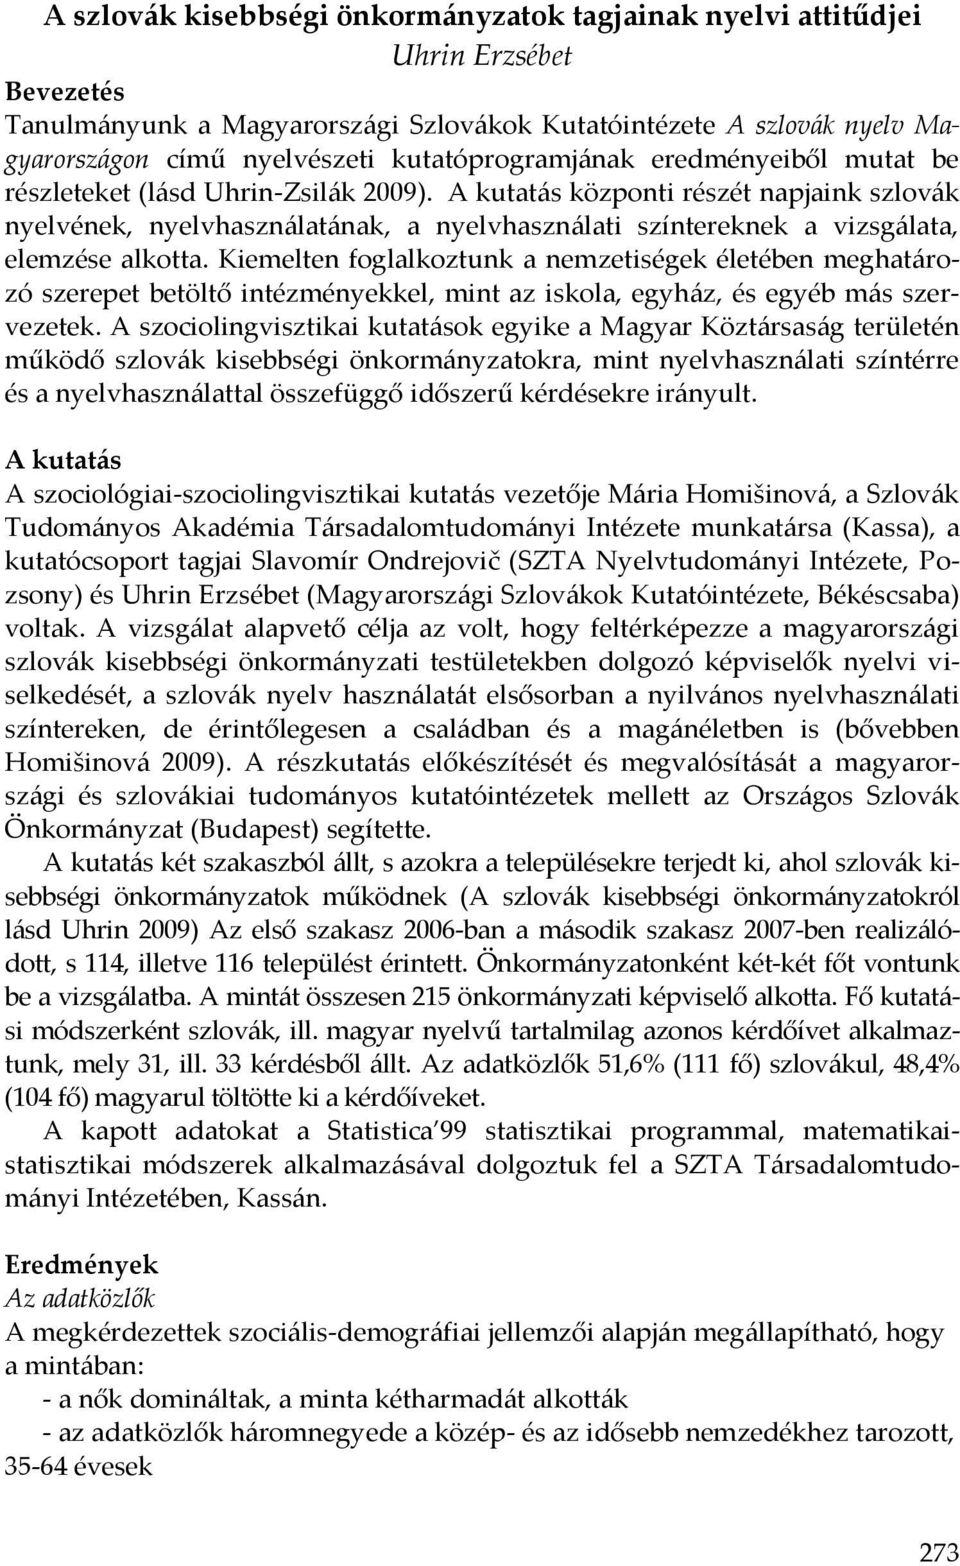 A kutatás központi részét napjaink szlovák nyelvének, nyelvhasználatának, a nyelvhasználati színtereknek a vizsgálata, elemzése alkotta.